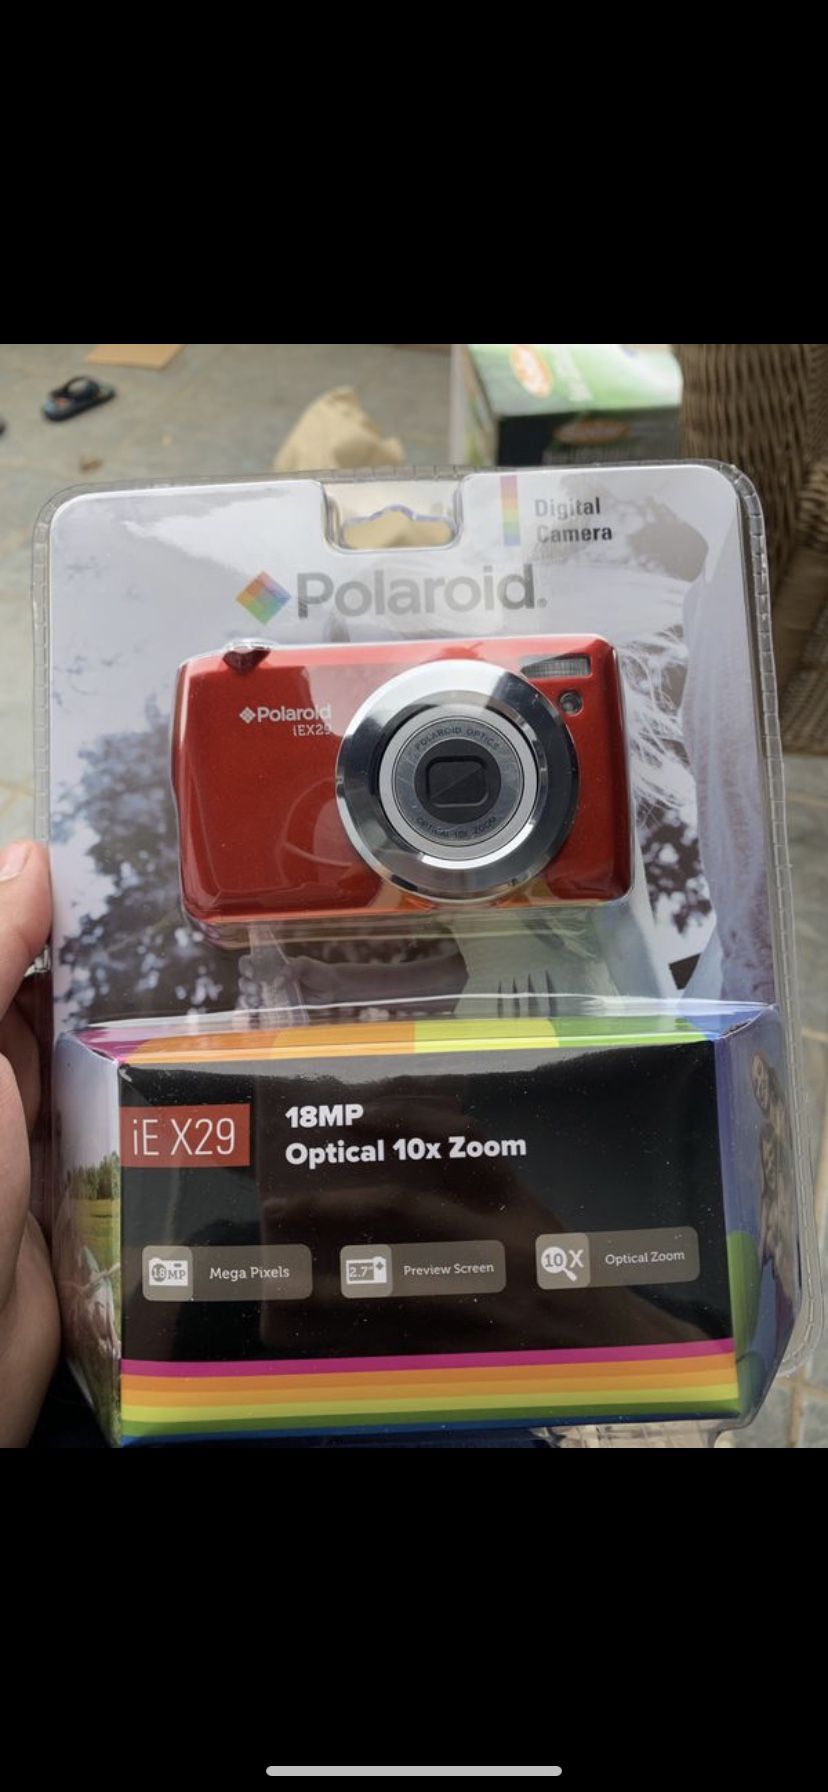 Polaroid digital cameras